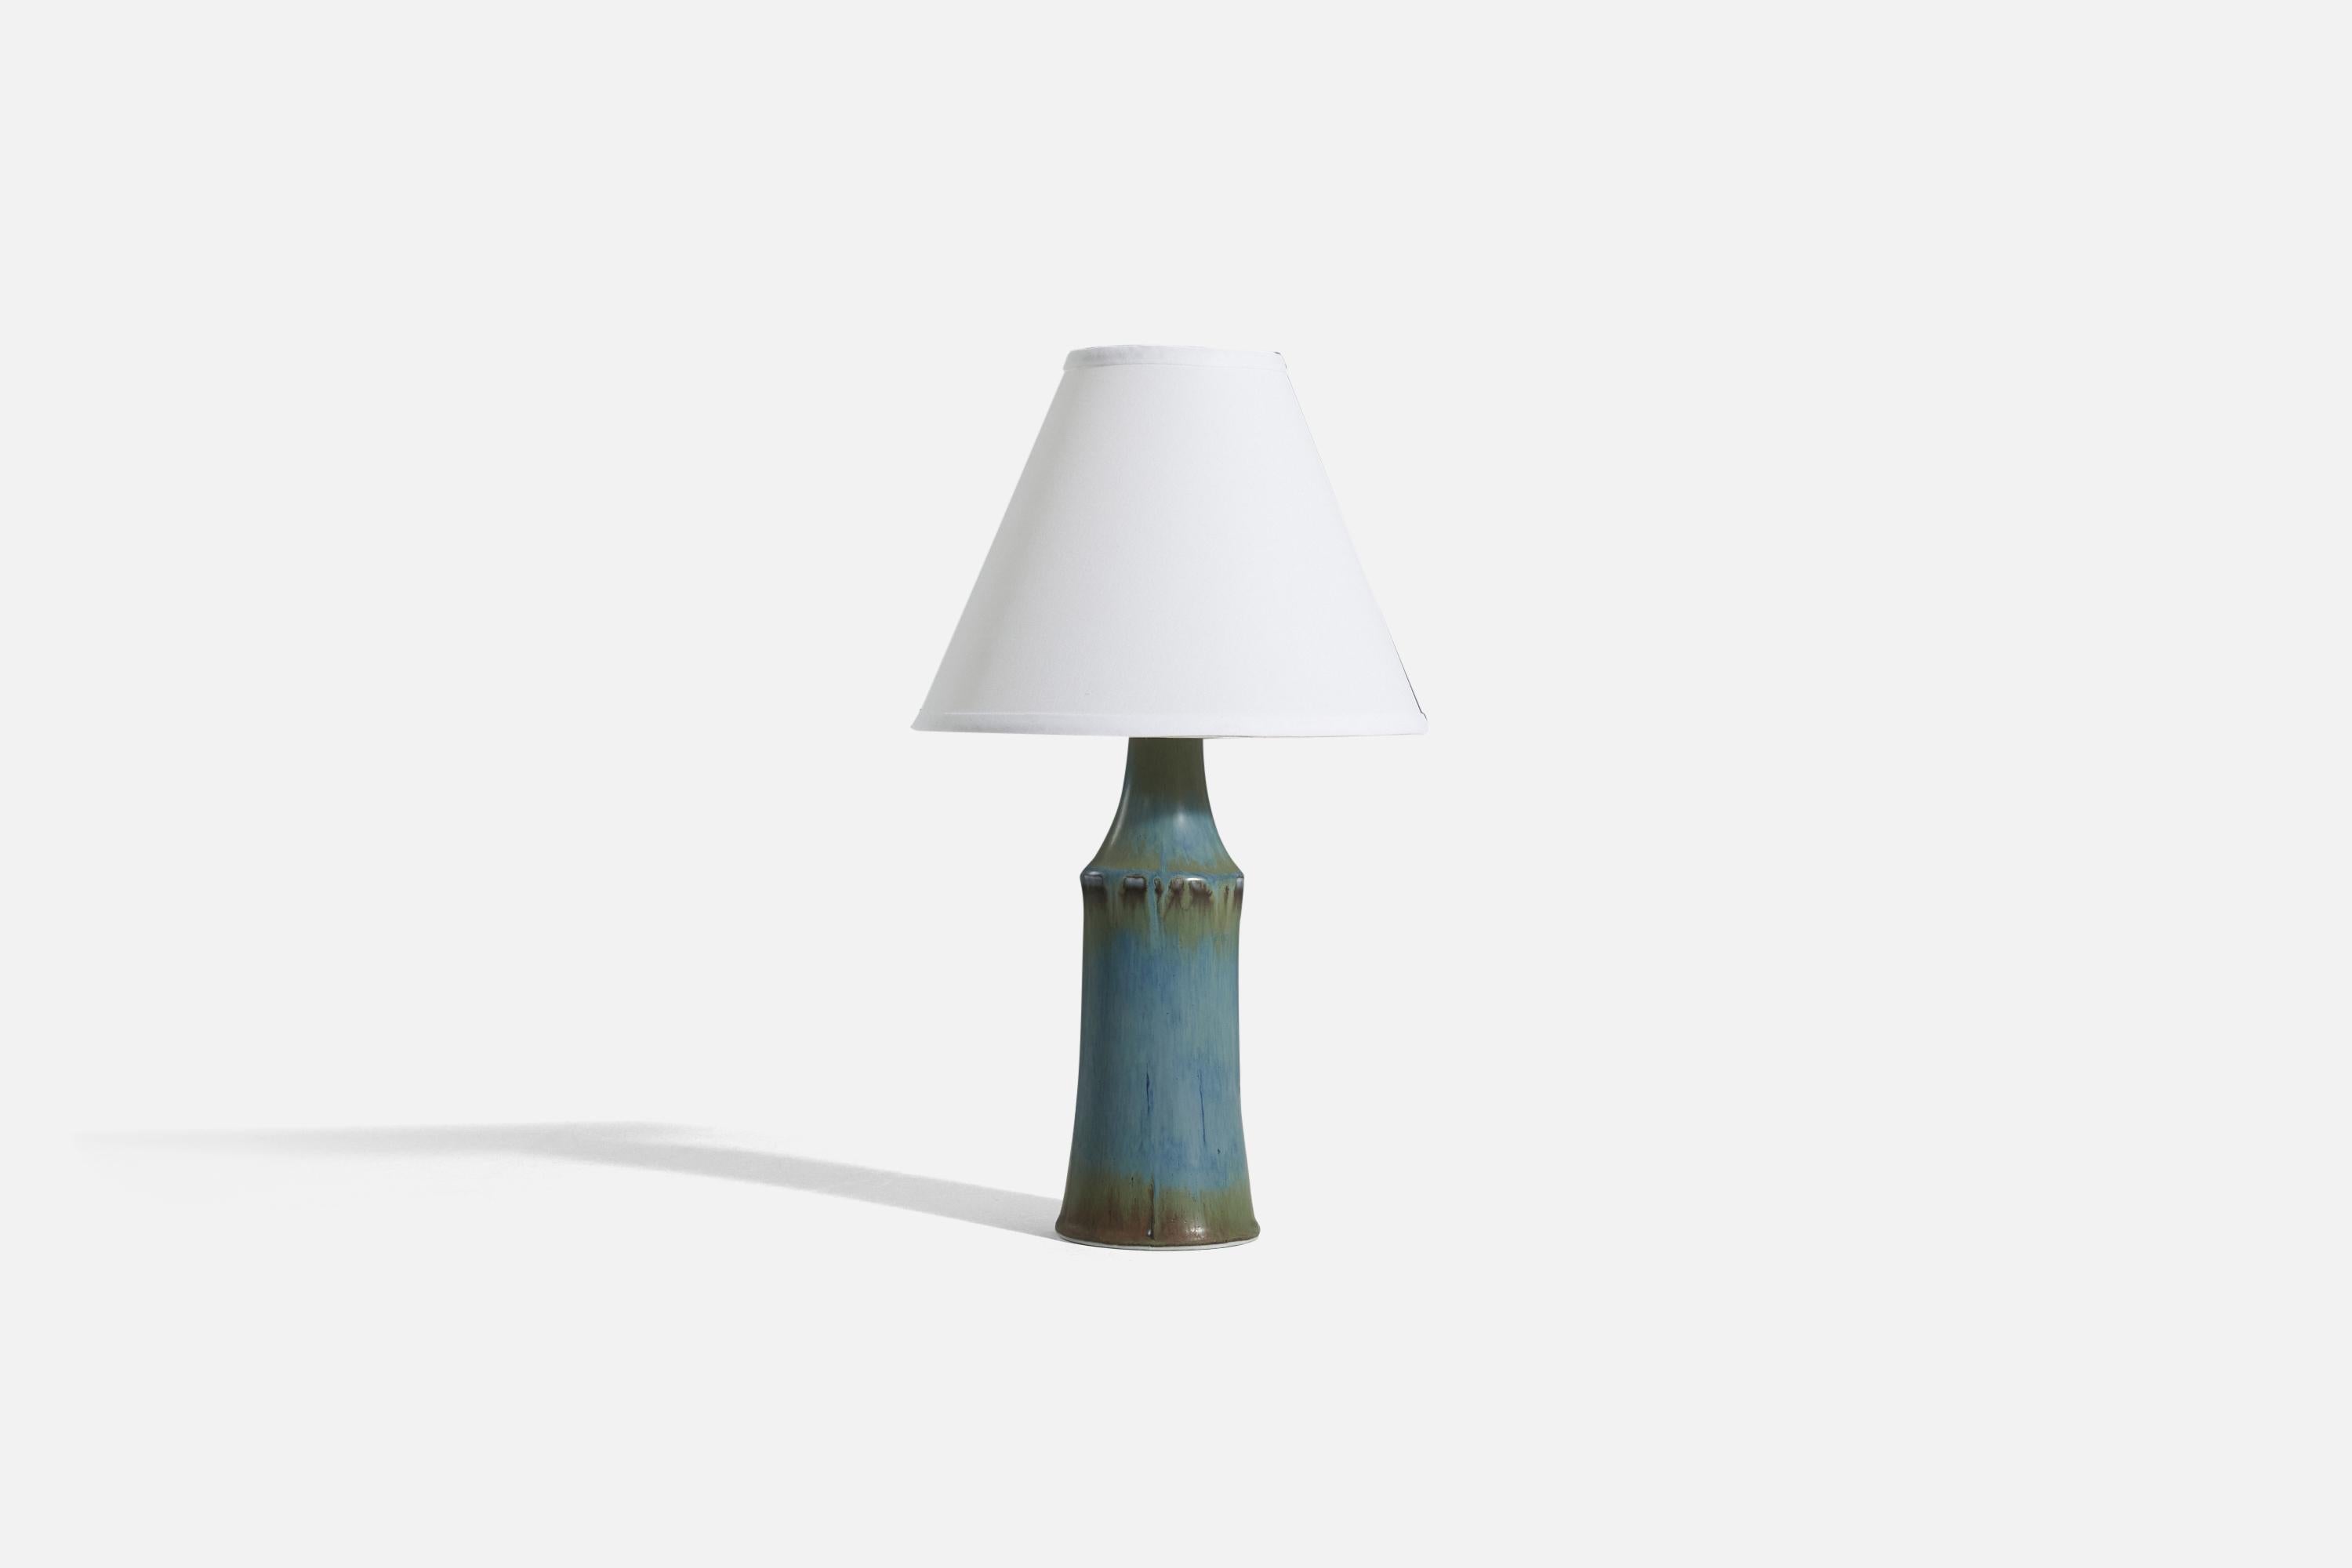 Lampe de table en grès émaillé bleu conçue par Carl-Harry Stålhane et produite par Rörstrand, Suède, vers les années 1960. 

Vendu sans abat-jour. 
Dimensions de la lampe (pouces) : 14.0625 x 4 x 4 (H x L x P)
Dimensions de l'abat-jour (pouces)